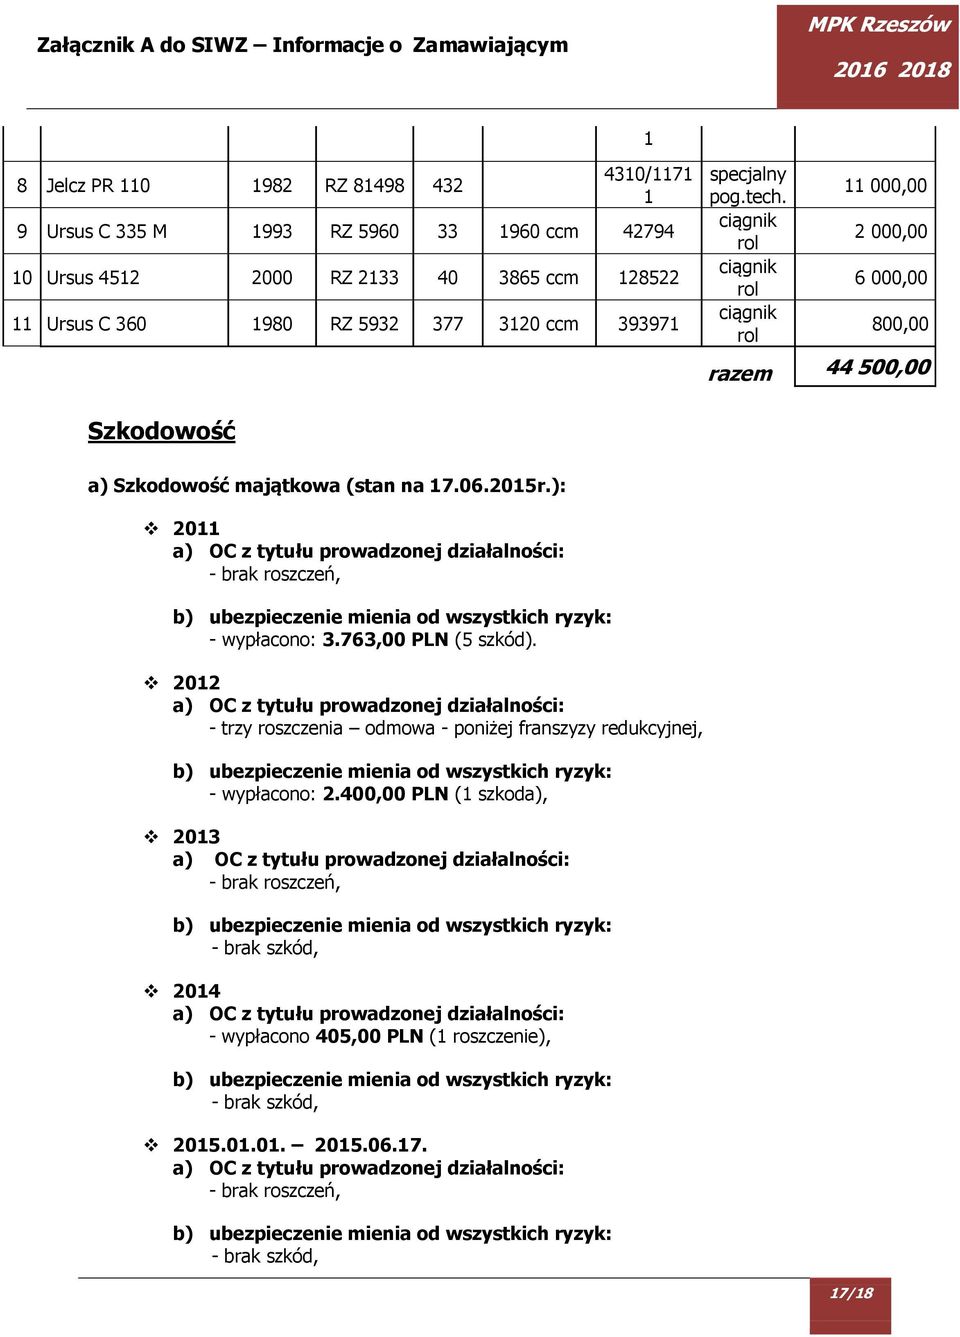 ): 2011 a) OC z tytułu prowadzonej działalności: - brak roszczeń, b) ubezpieczenie mienia od wszystkich ryzyk: - wypłacono: 3.763,00 PLN (5 szkód).